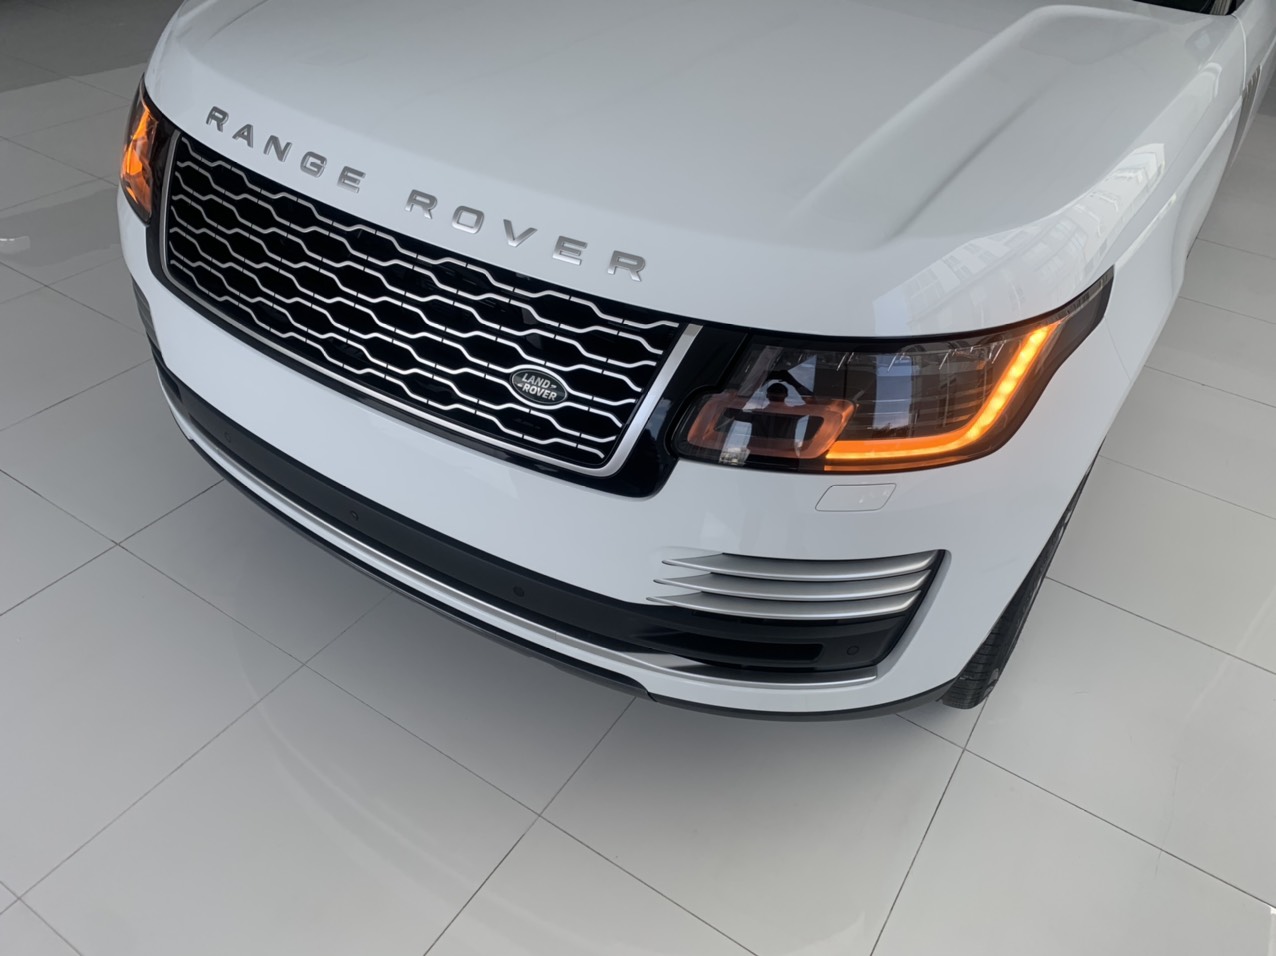 Xe Range Rover Phiên Bản Cao Cấp Nhất Đời 2020 Giá 11,6 Tỷ Đồng, land rover, RANGE ROVER, xe range rover 2020,  Range Rover của nước nào sản xuất, hiện tại xe có mấy loại, giá rẻ nhất bao nhiêu tiền,